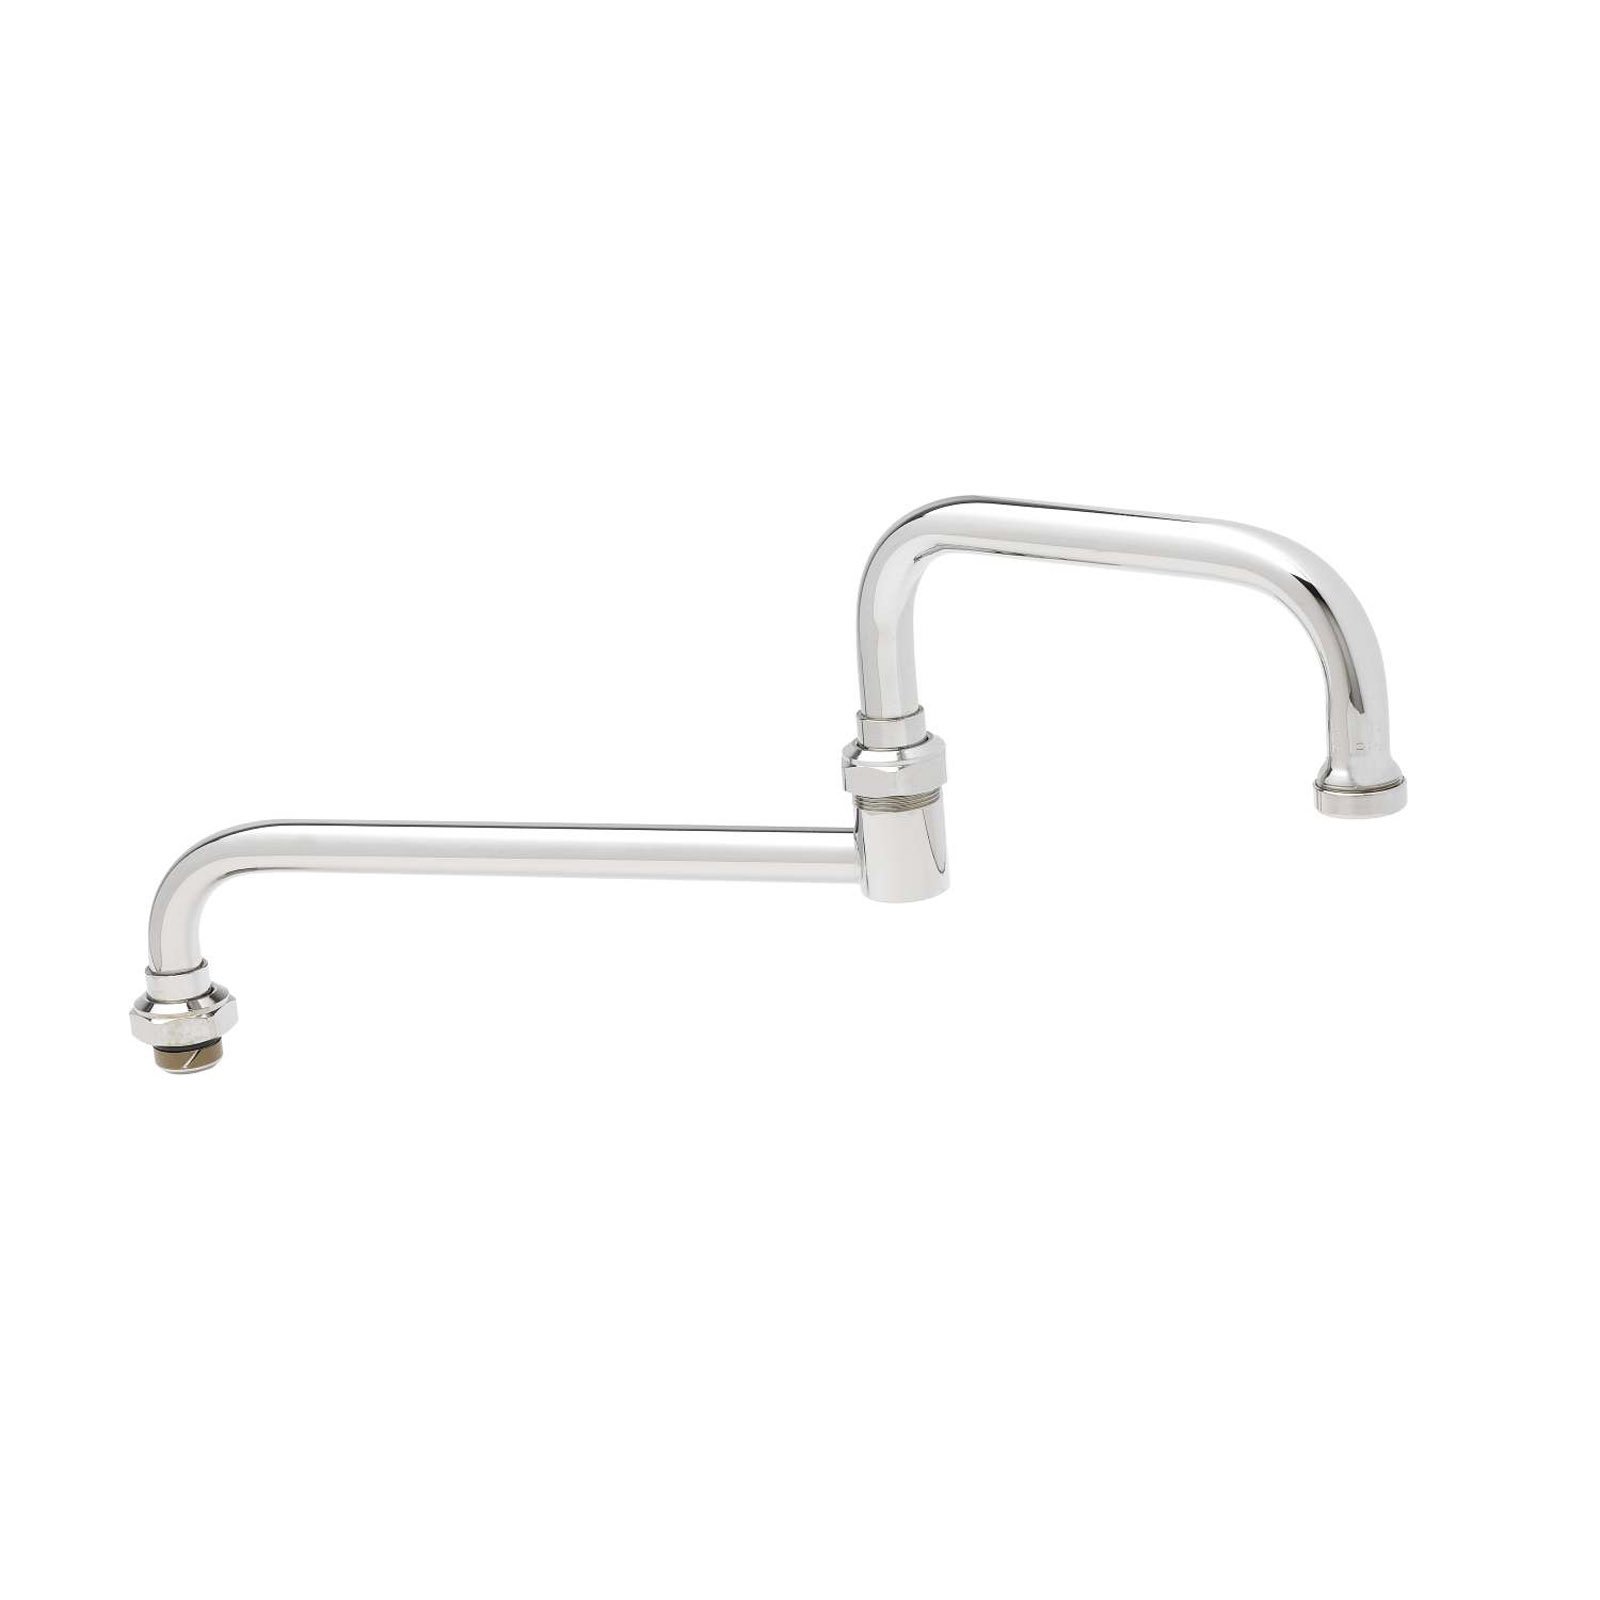 T&S Brass 067X Spout / Nozzle Faucet